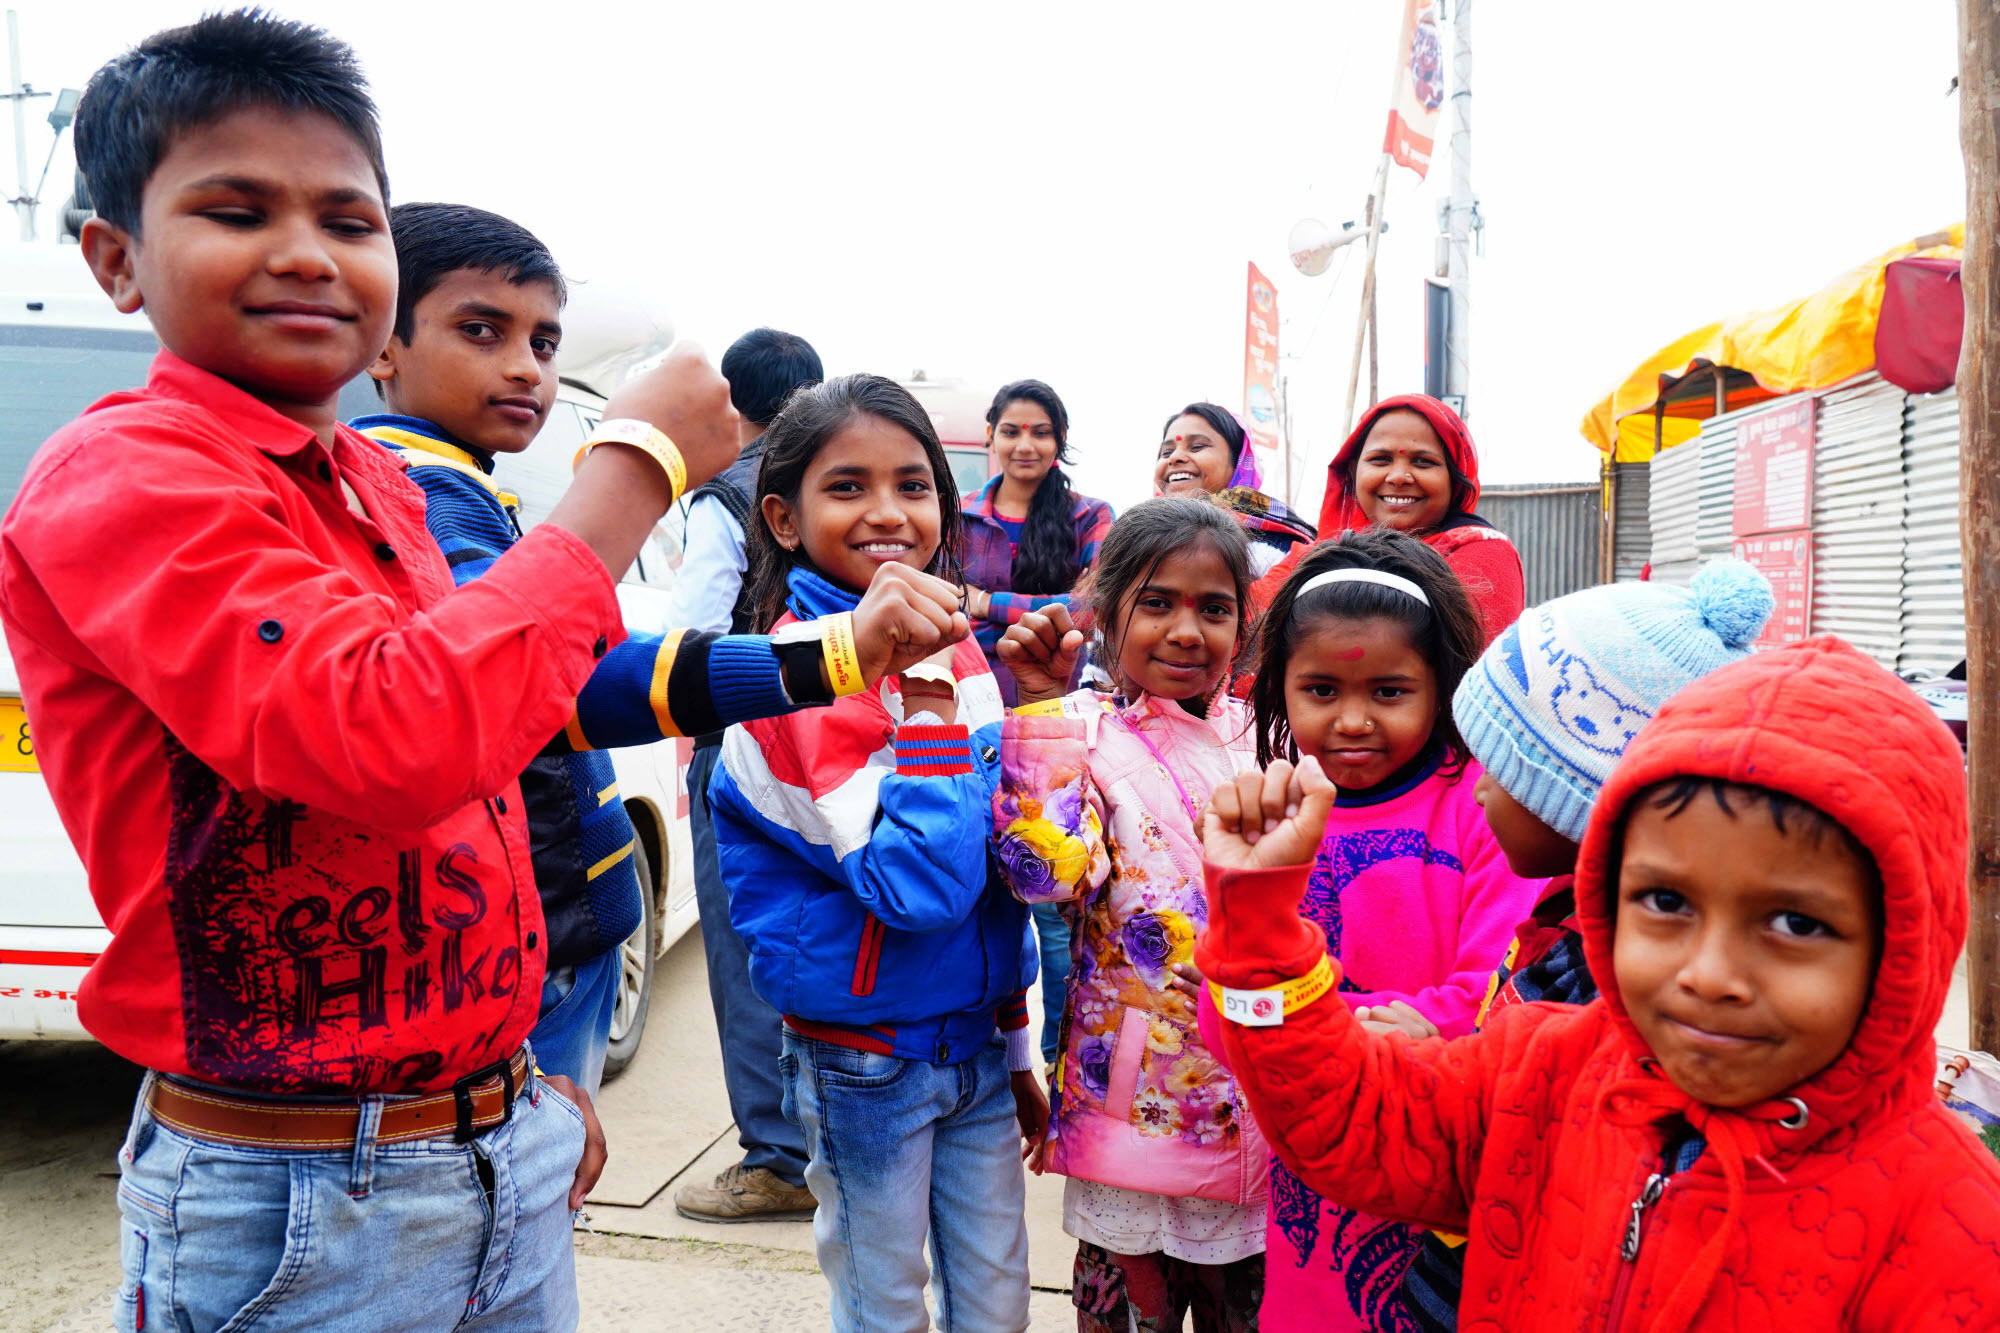 LG전자, 인도 최대 축제에서 고객 마음 사로잡았다03/04: LG전자가 지난 1월 15일부터 3월 4일까지 인도 북부 우타르 프라데시주 프라야그라지에서 열리고 있는 세계 최대 순례 축제인 ‘쿰브 멜라(Kumbh Mela)’에서 미아 방지용 손목밴드 10만 개를 어린 아이는 물론 노인들에게도 무료로 배포하고 있다. 현지 아이들이 미아 방지용 손목밴드를 차고 있는 모습.